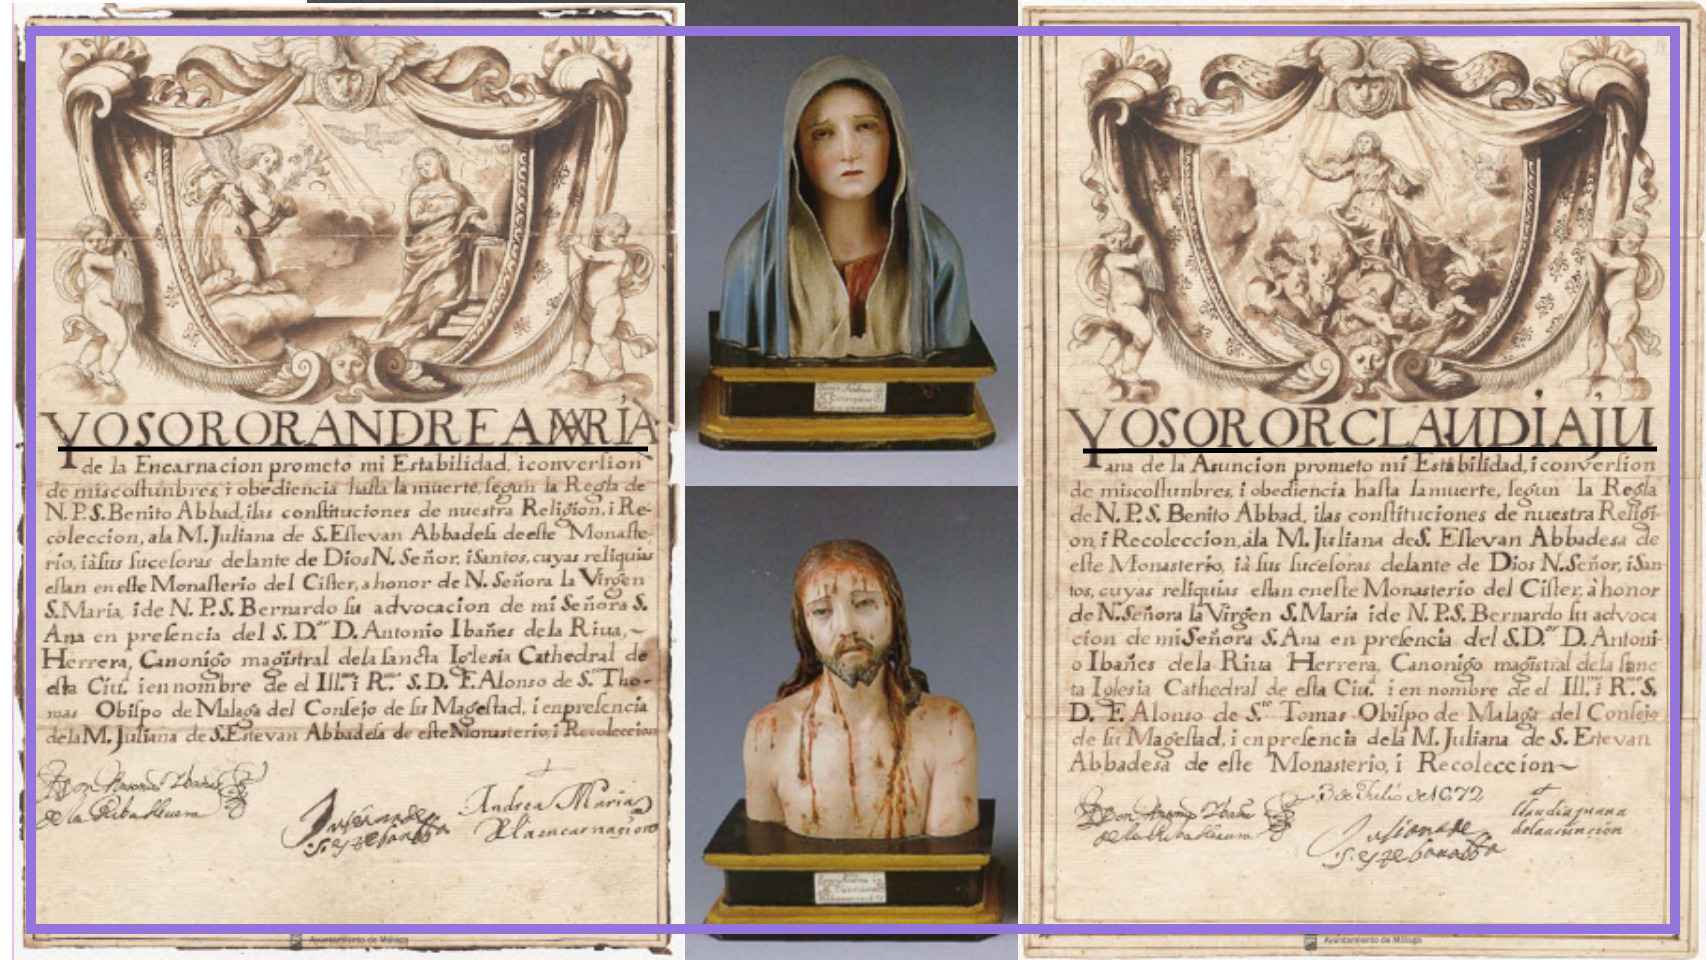 Las cartas de profesión de Andrea y Claudia junto con dos esculturas hechas por Andrea.